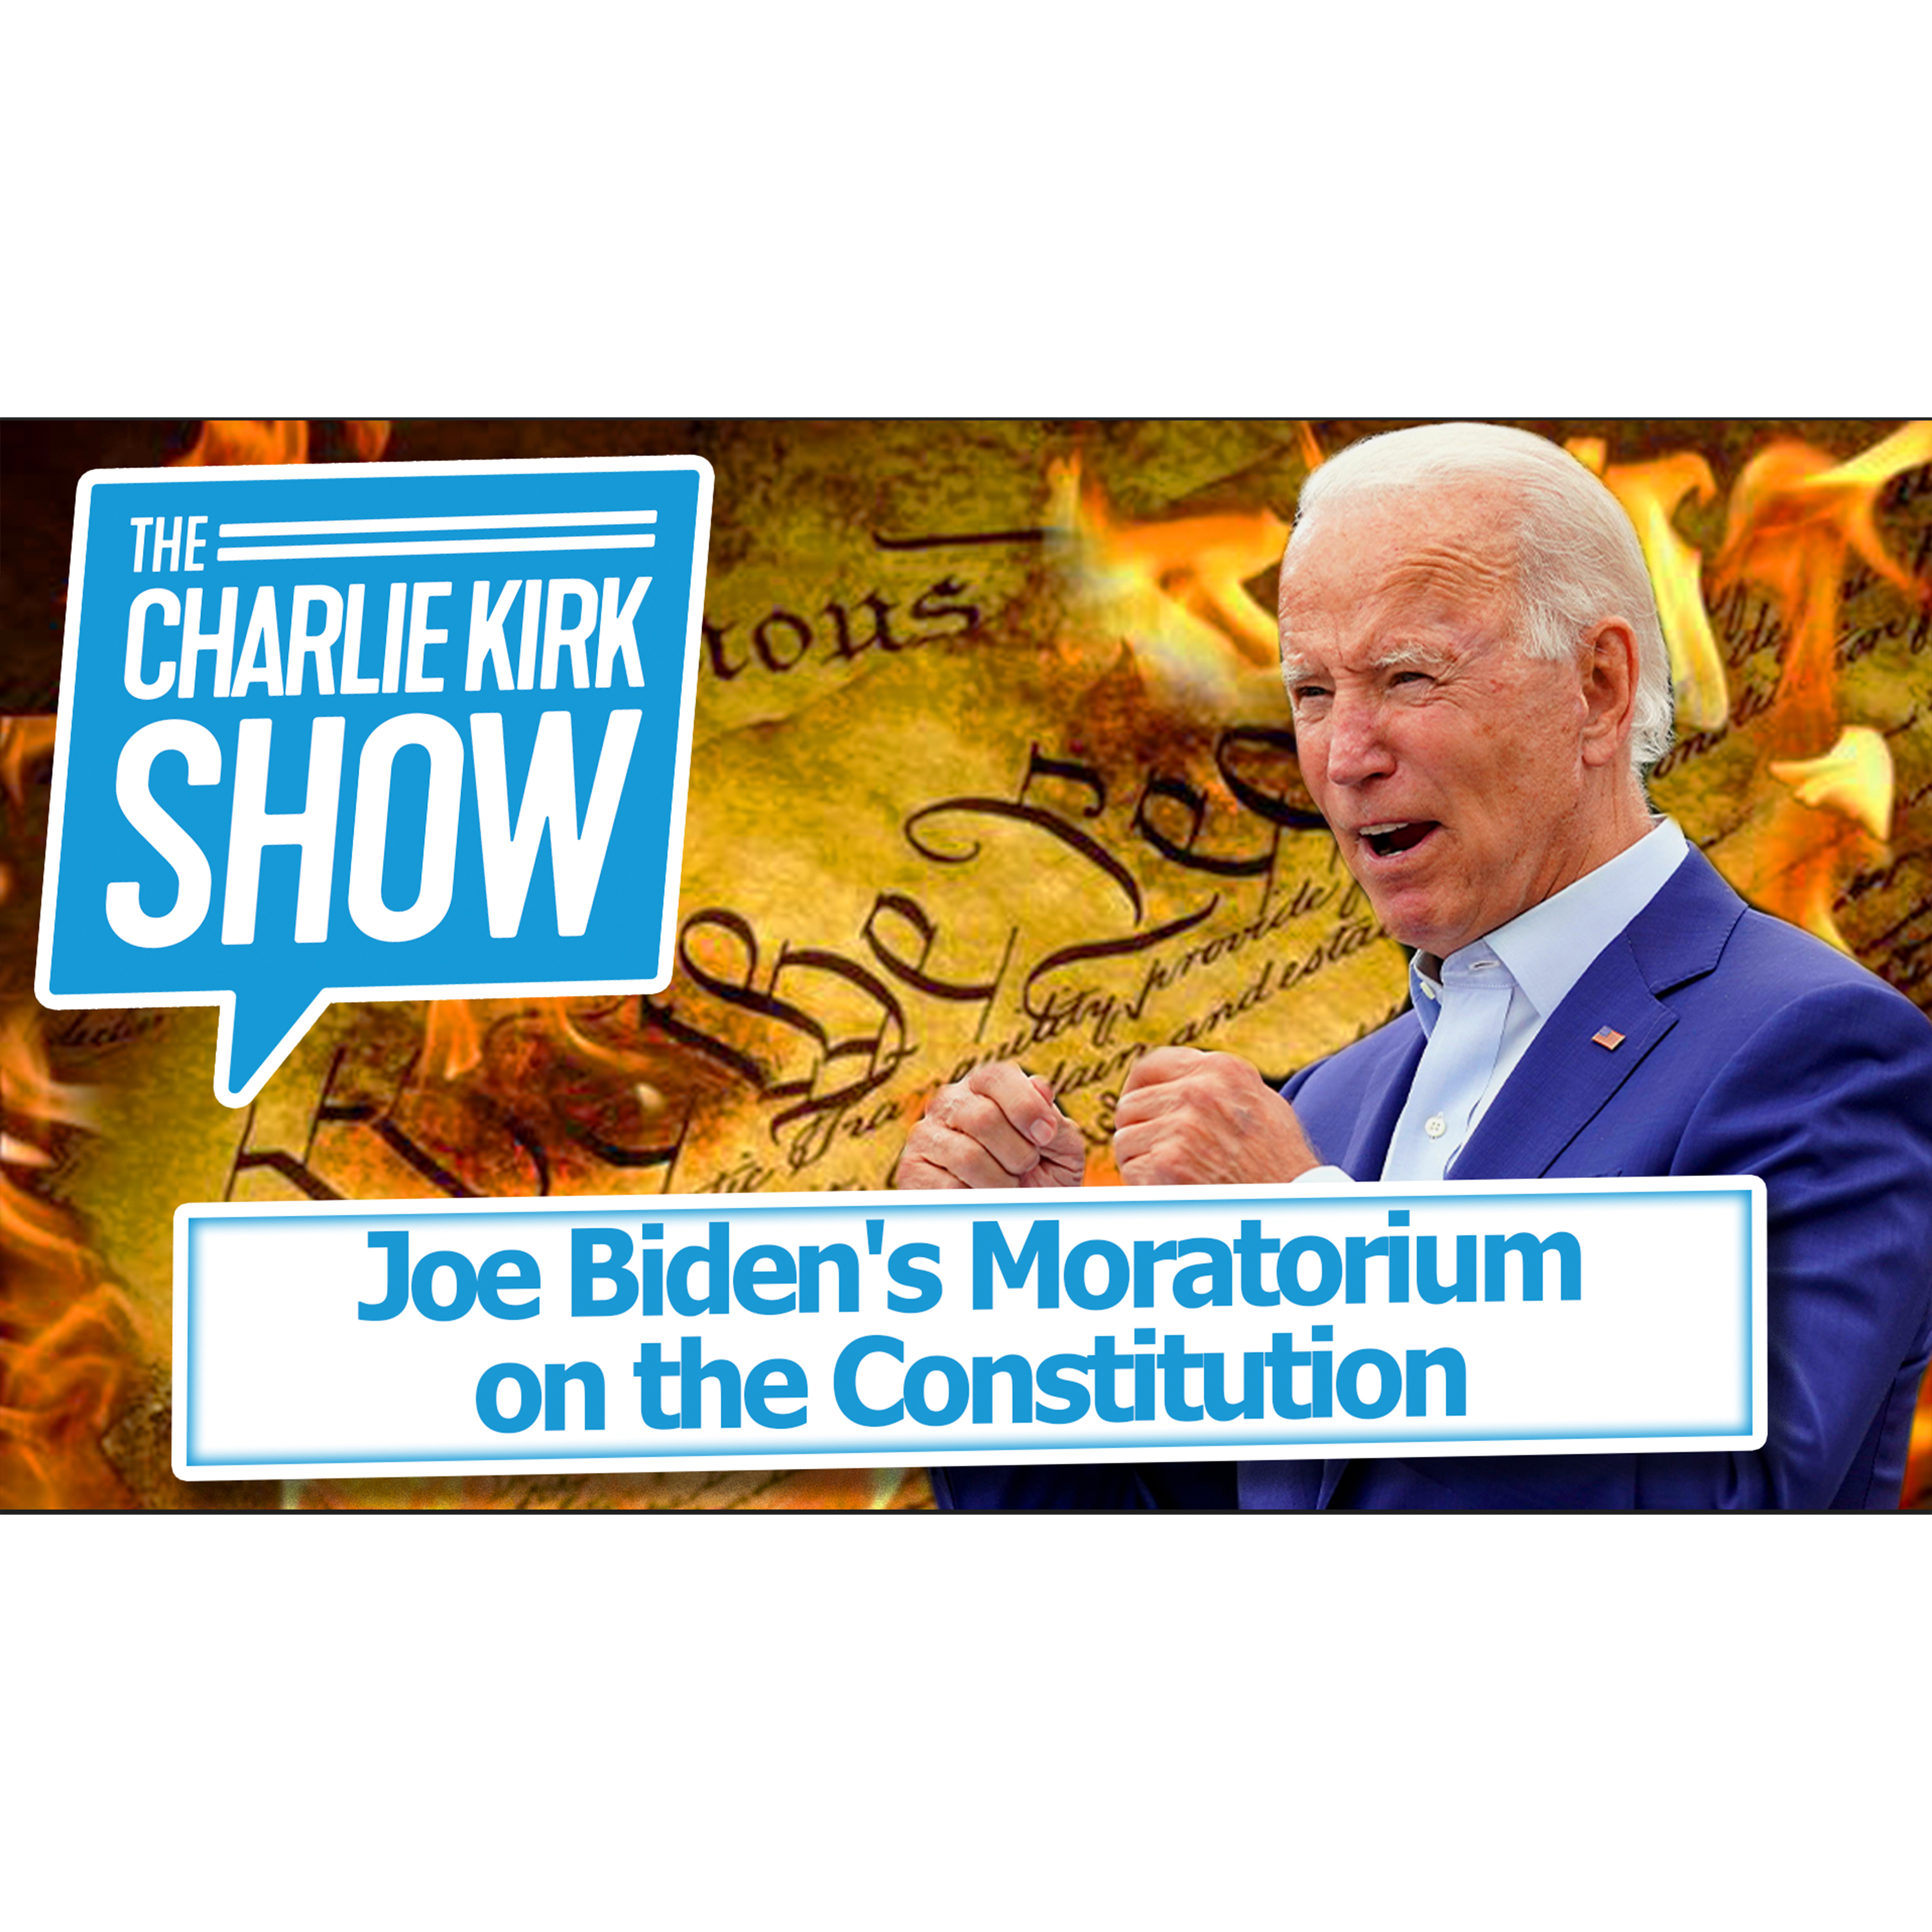 Joe Biden's Moratorium on the Constitution